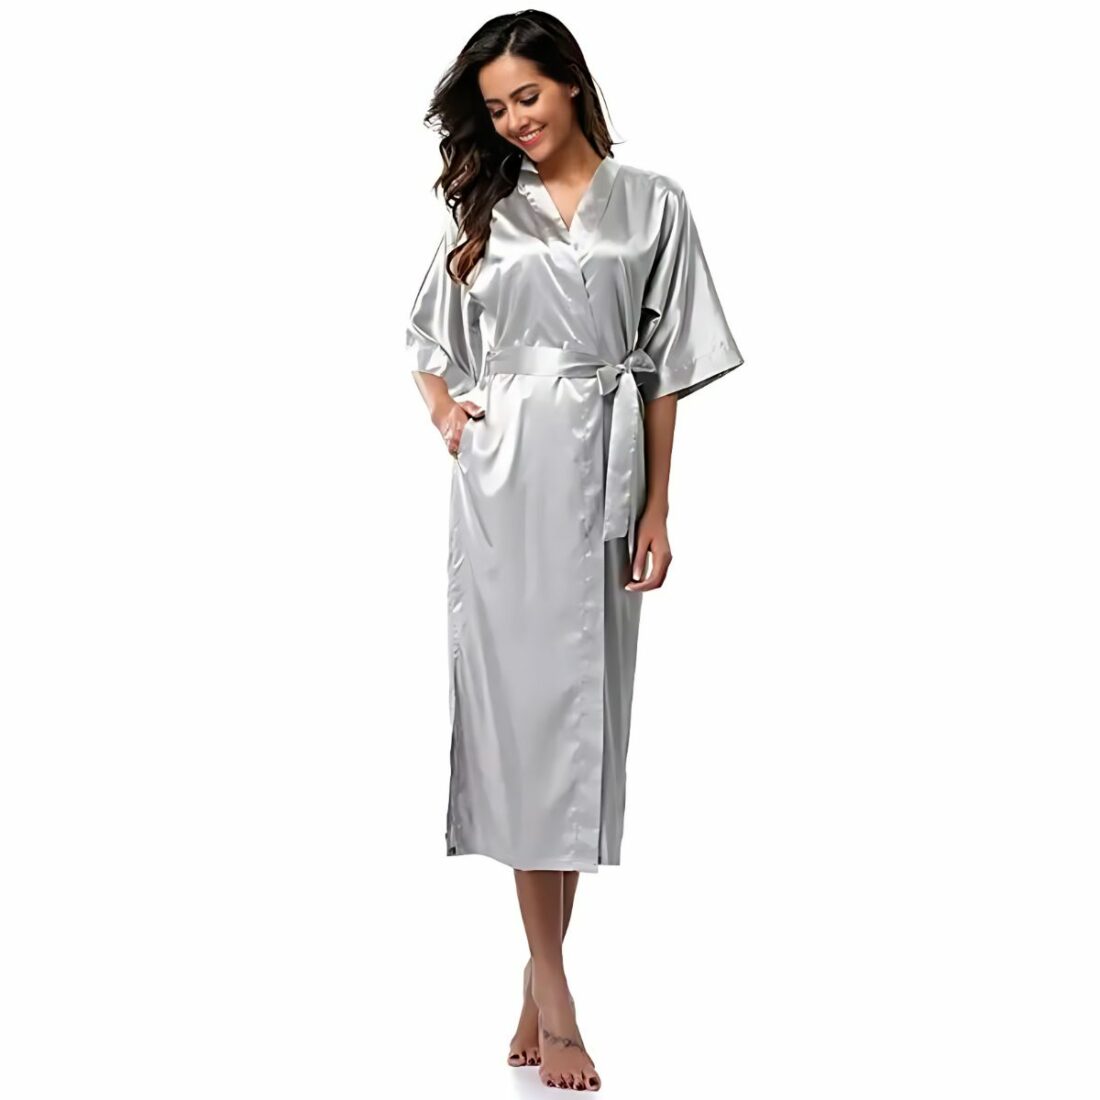 Robe de chambre longue unie en satin pour femme IMG 15 02 robe chambre longue unie femme portee gris